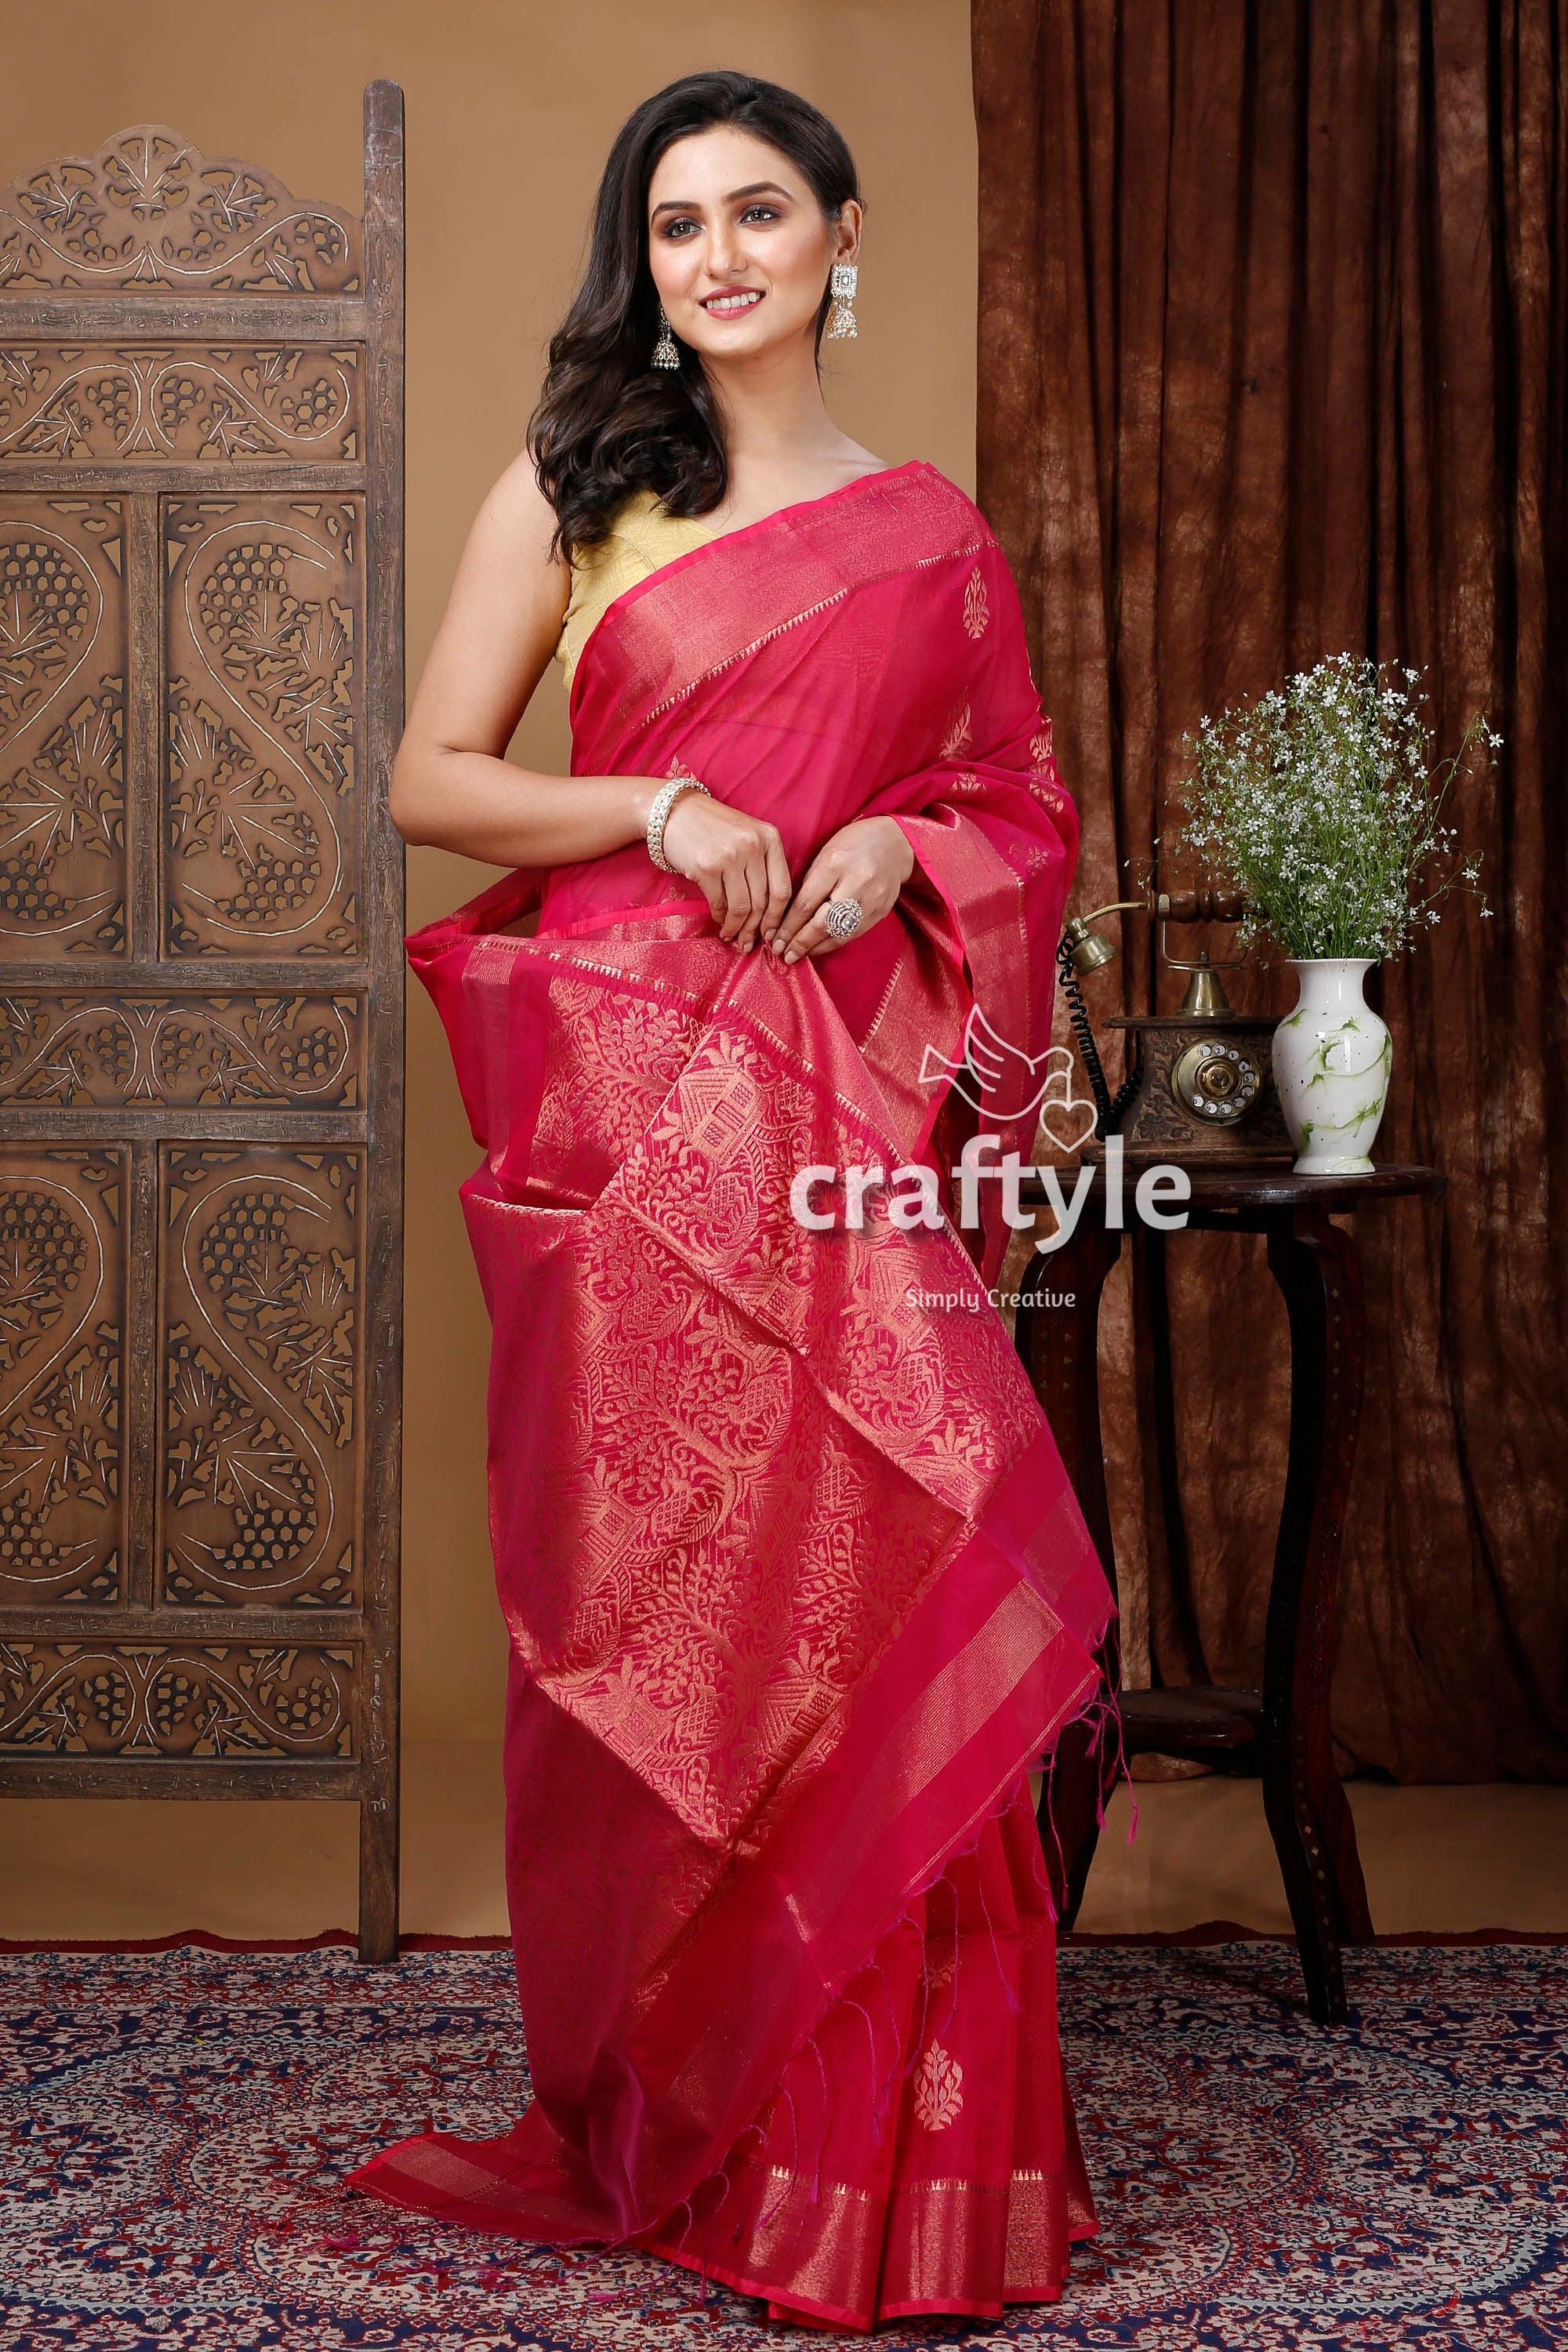 Claret Red Handloom Saree with Zari Work - Elegant Indian Ethnic Wear-Craftyle